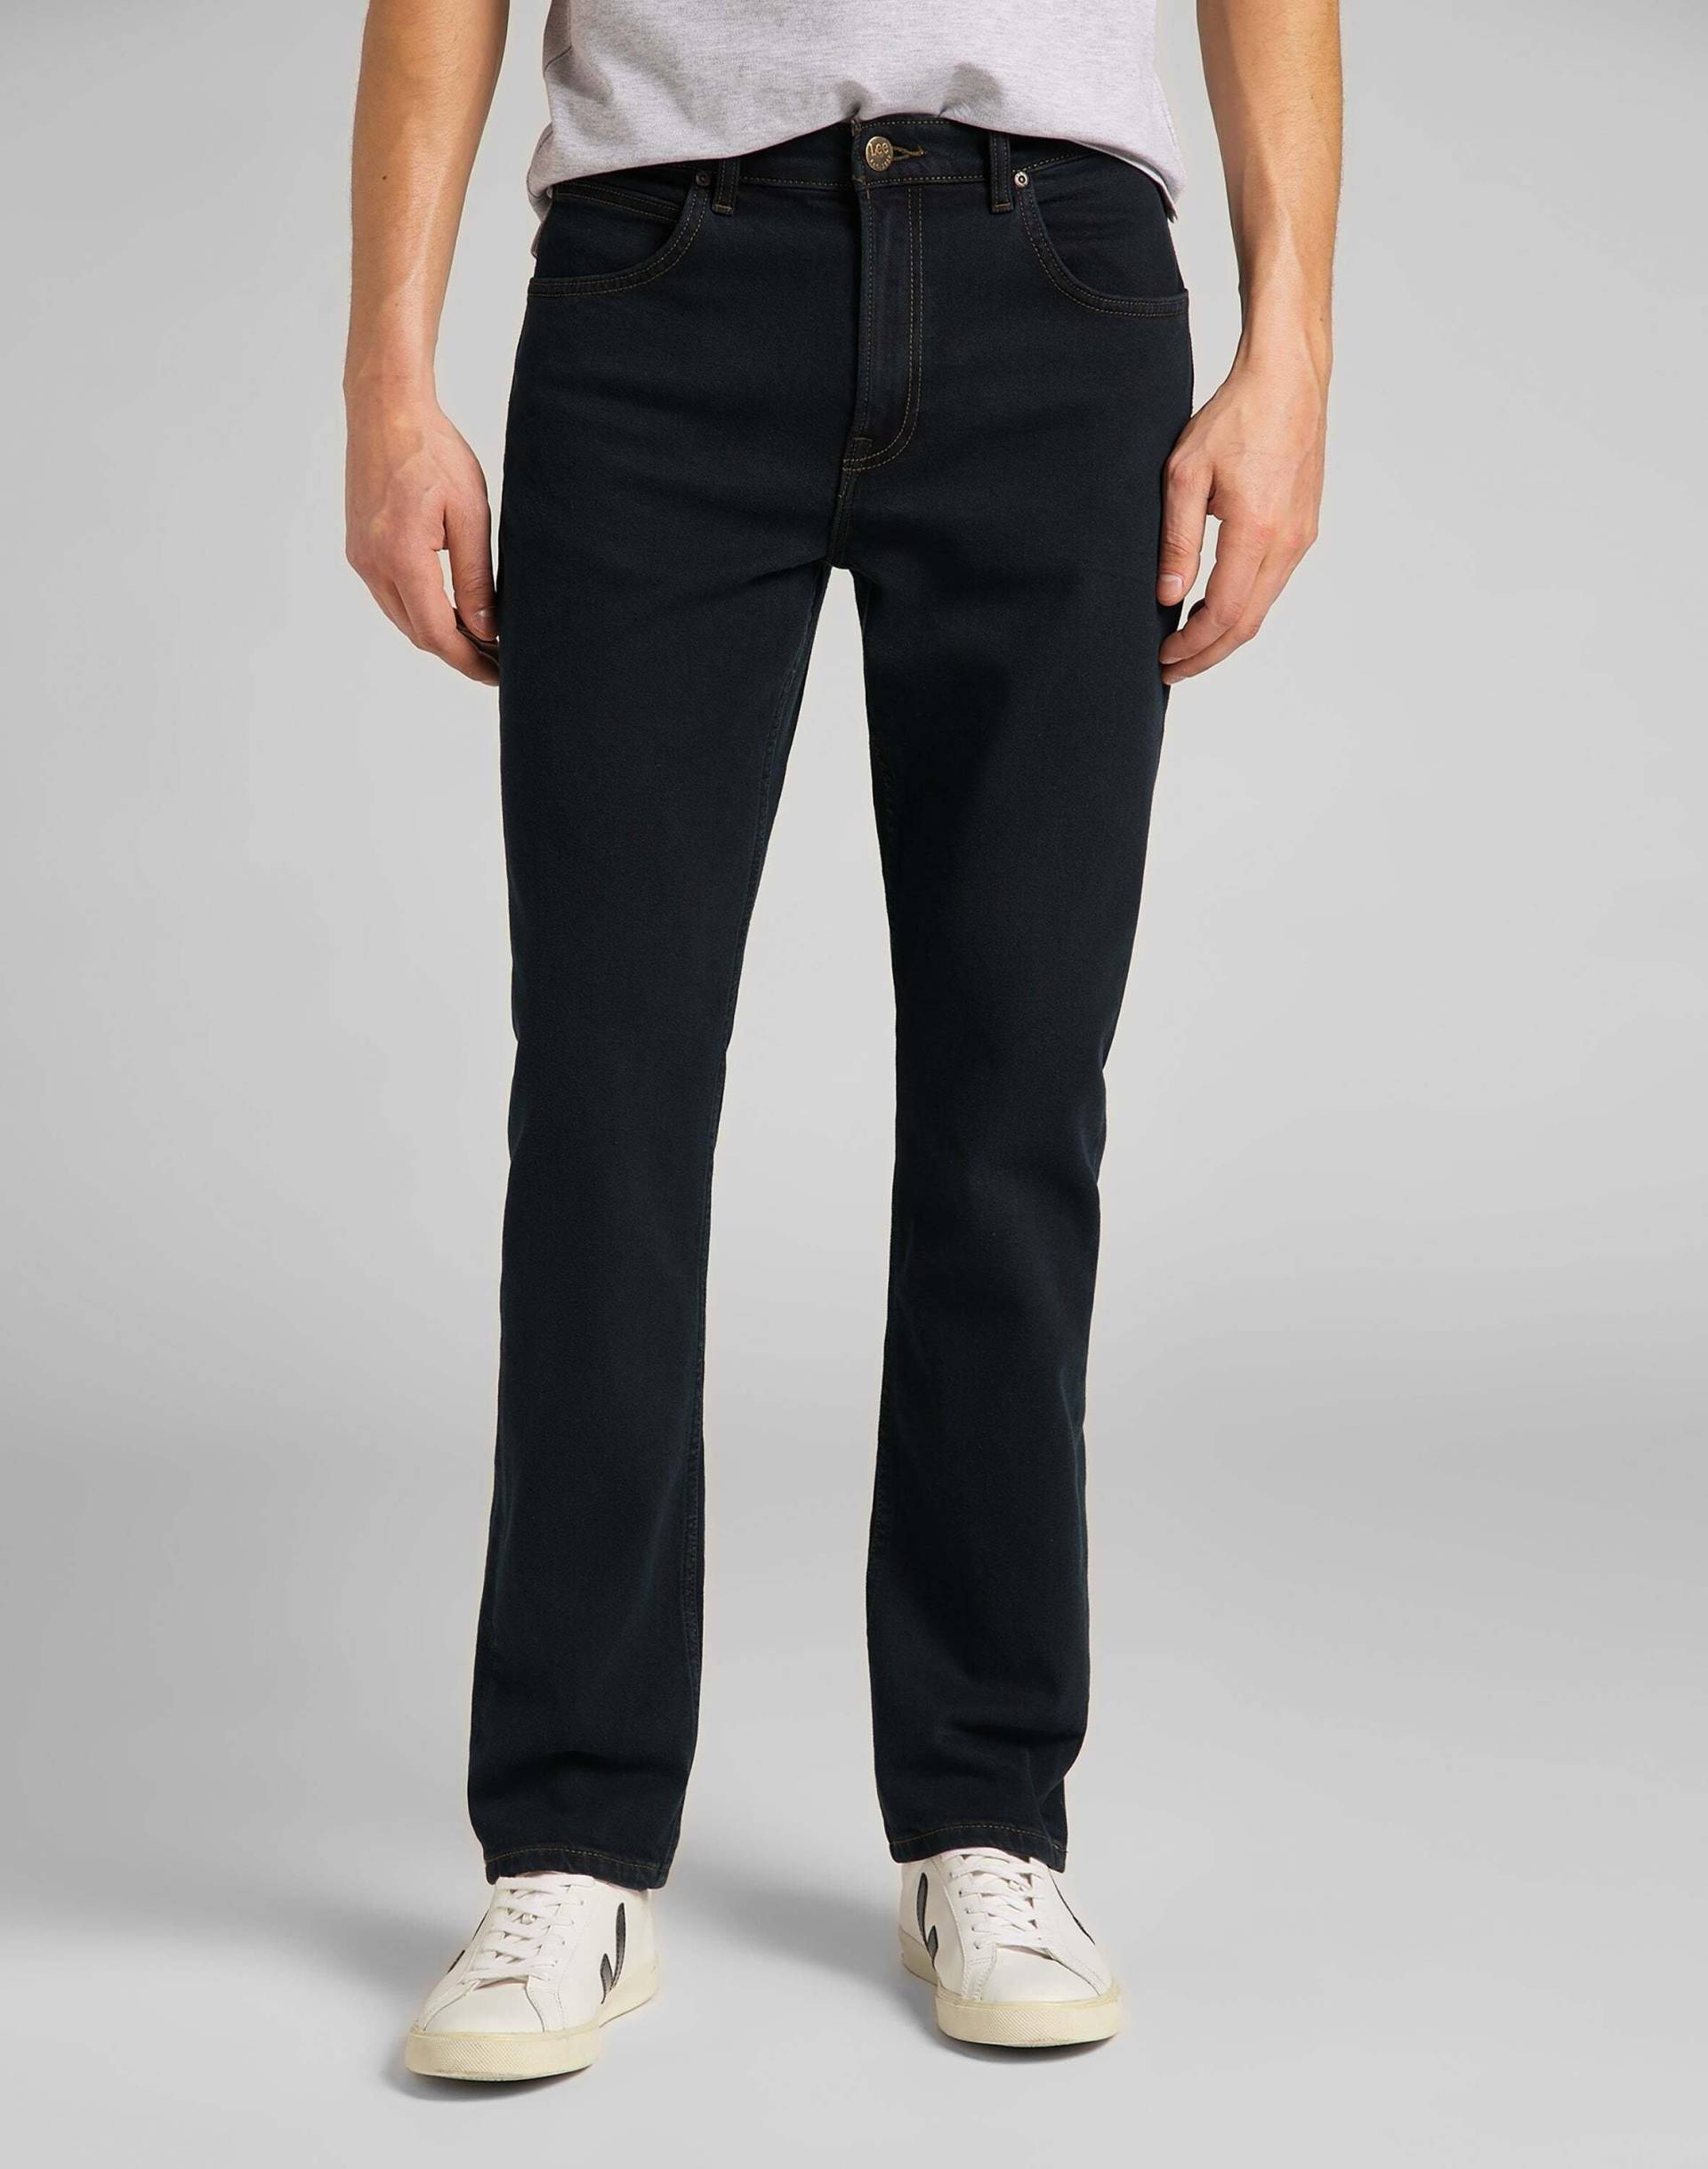 Jeans Straight Leg Brooklyn Herren Blau Denim L32/W30 von Lee